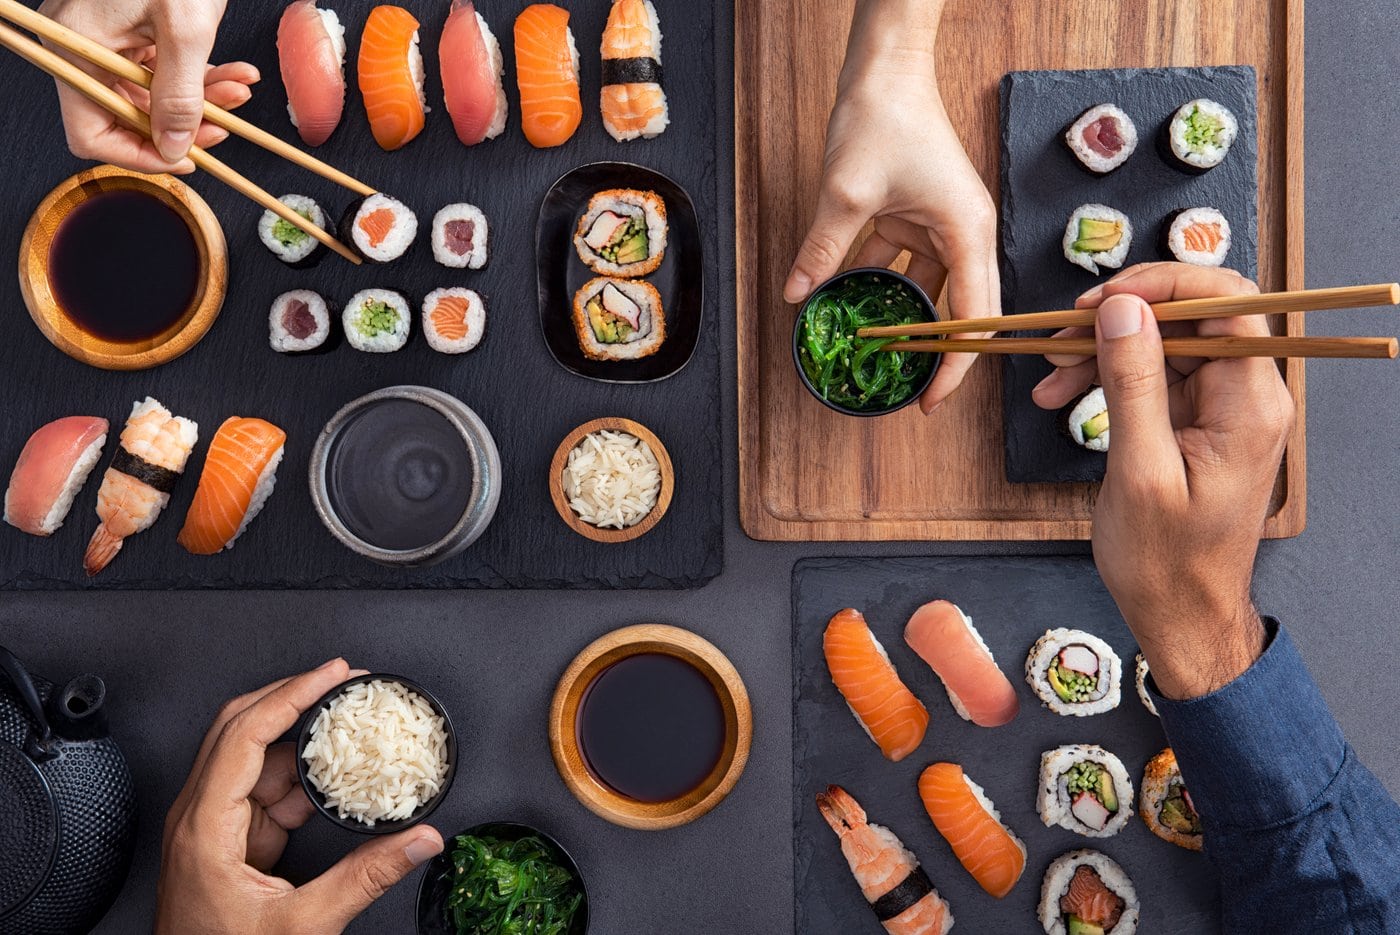 Sharing and eating sushi food